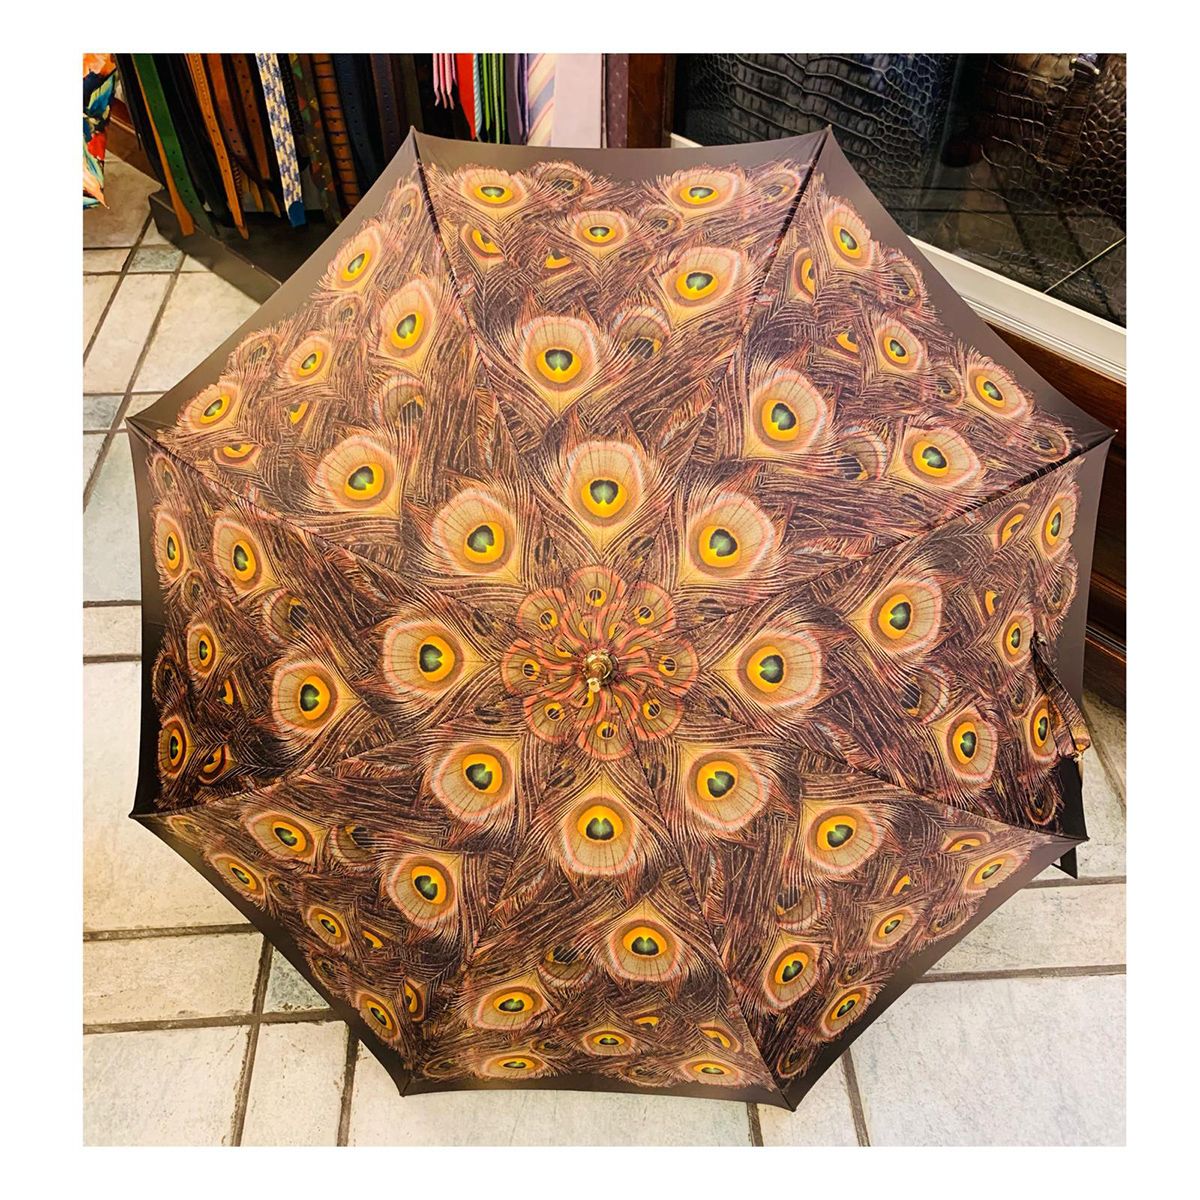 Paraguas con variedad en colores en Logroño